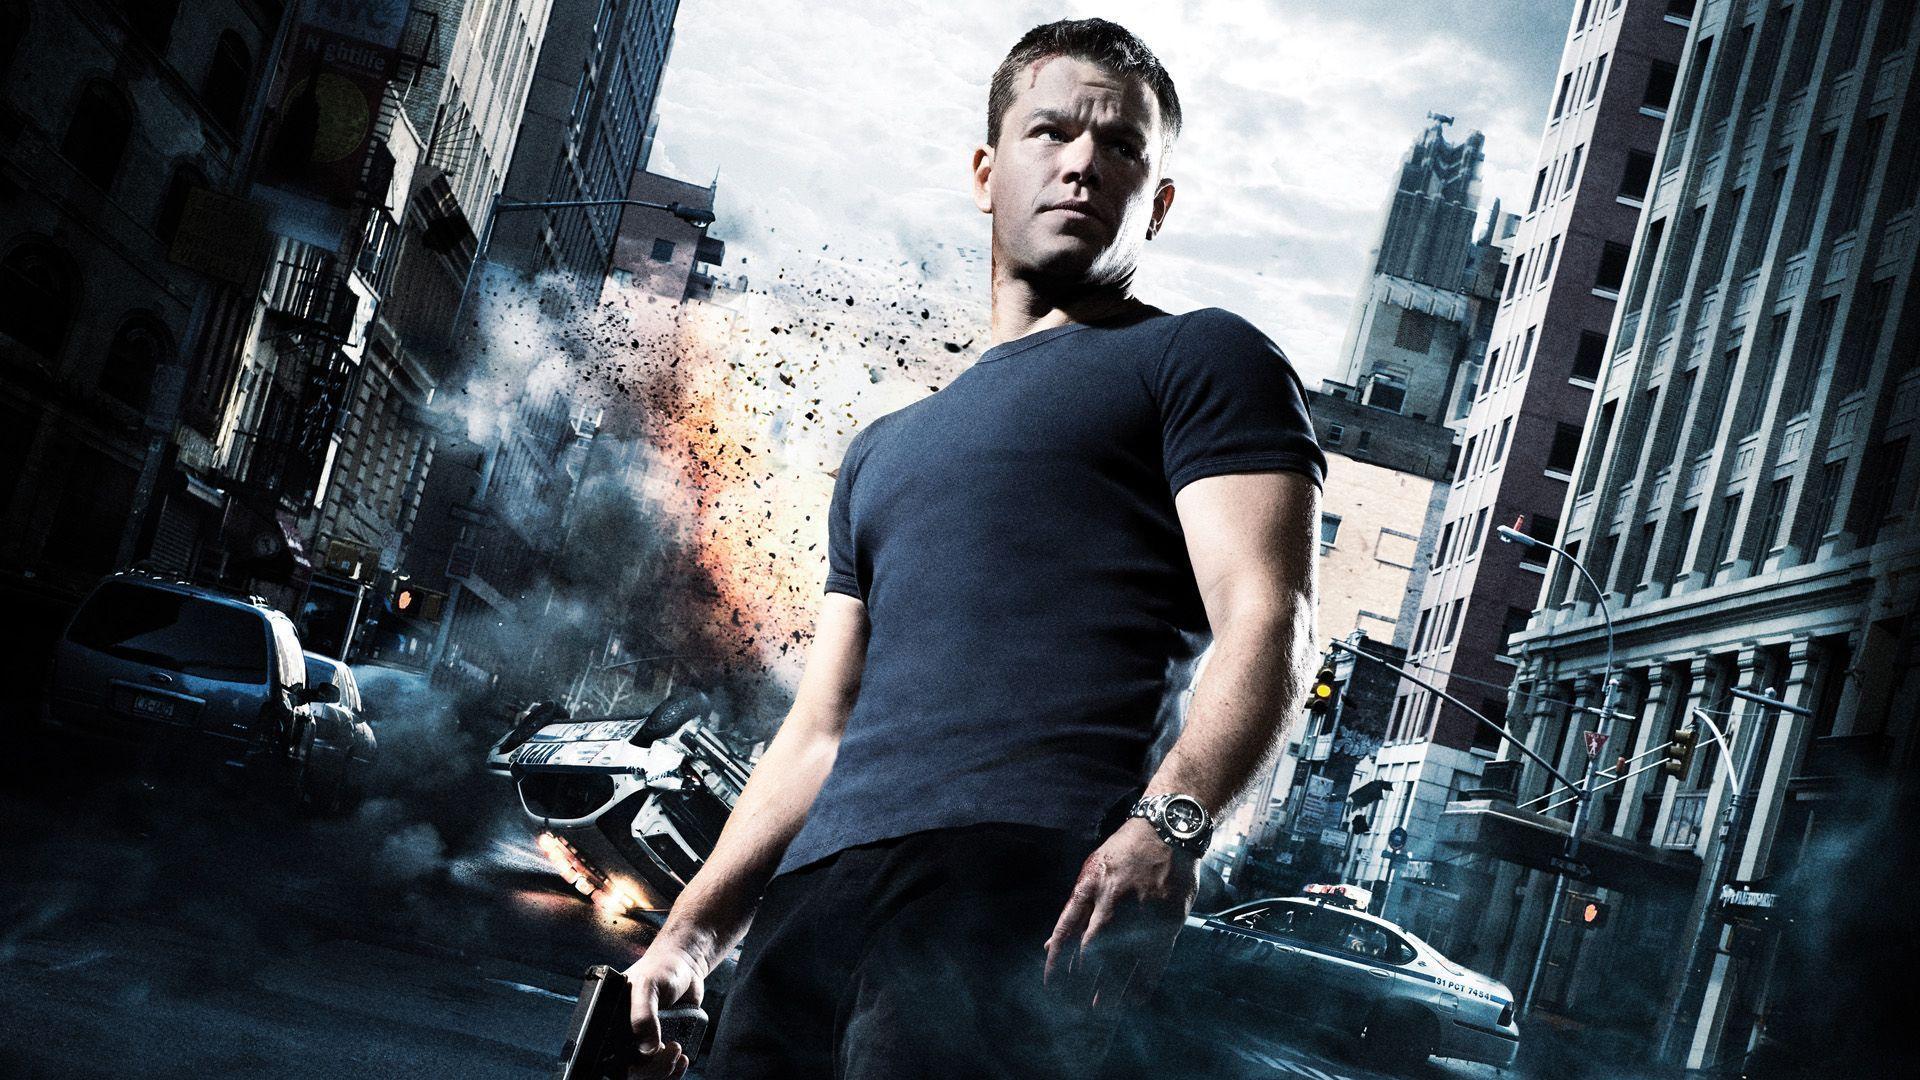 Matt Damon Confirms Return As Jason Bourne In 2016